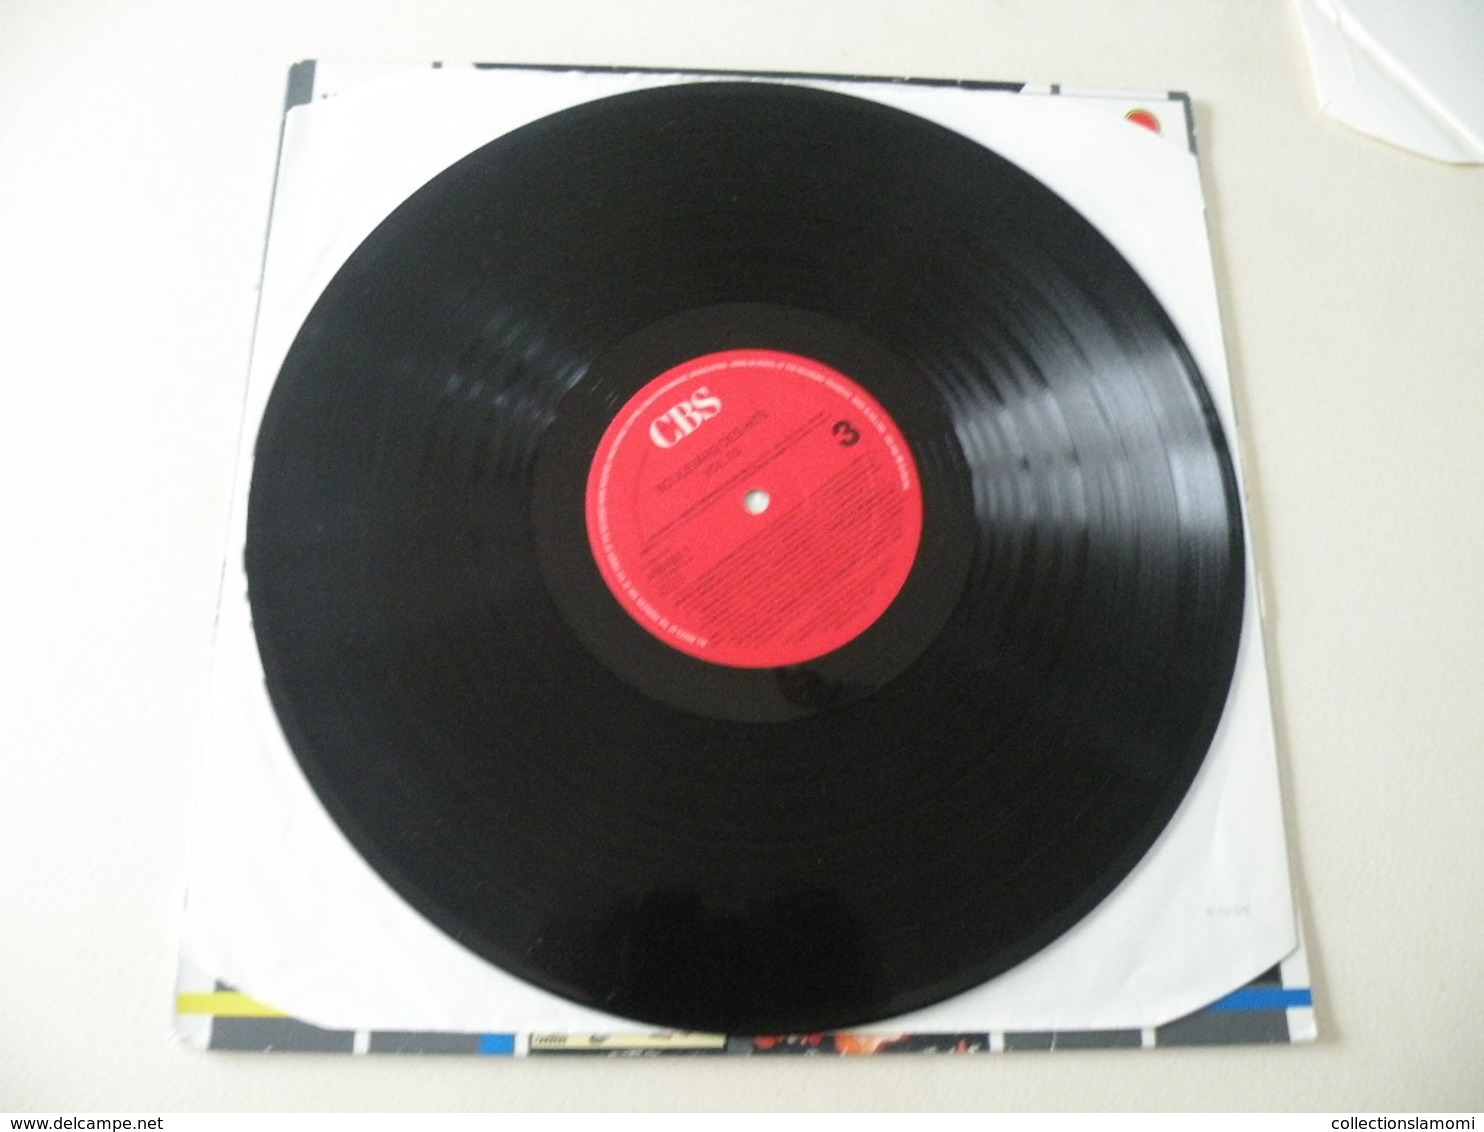 Boulevard Des Hits 22 Titres Originaux - (Titres Sur Photos) - Vinyle 33 T LP Double Album - Compilations